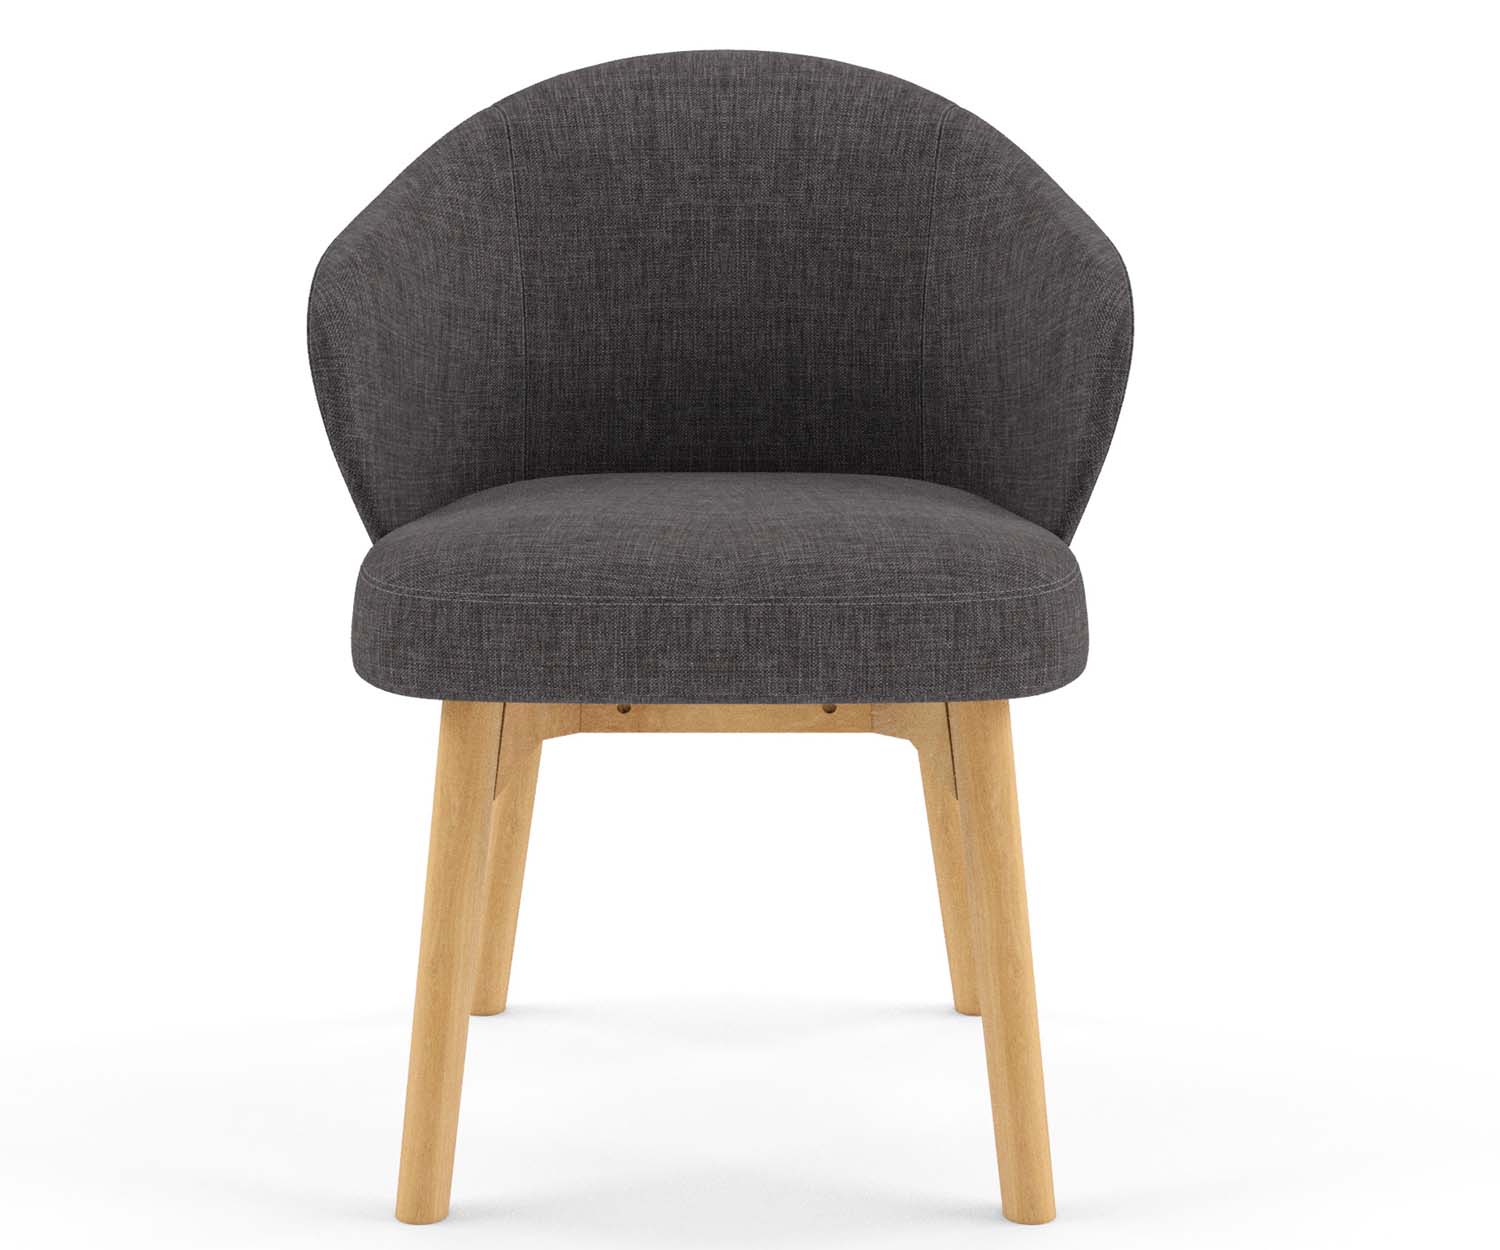 Hugo armchair made in Australia by FHG